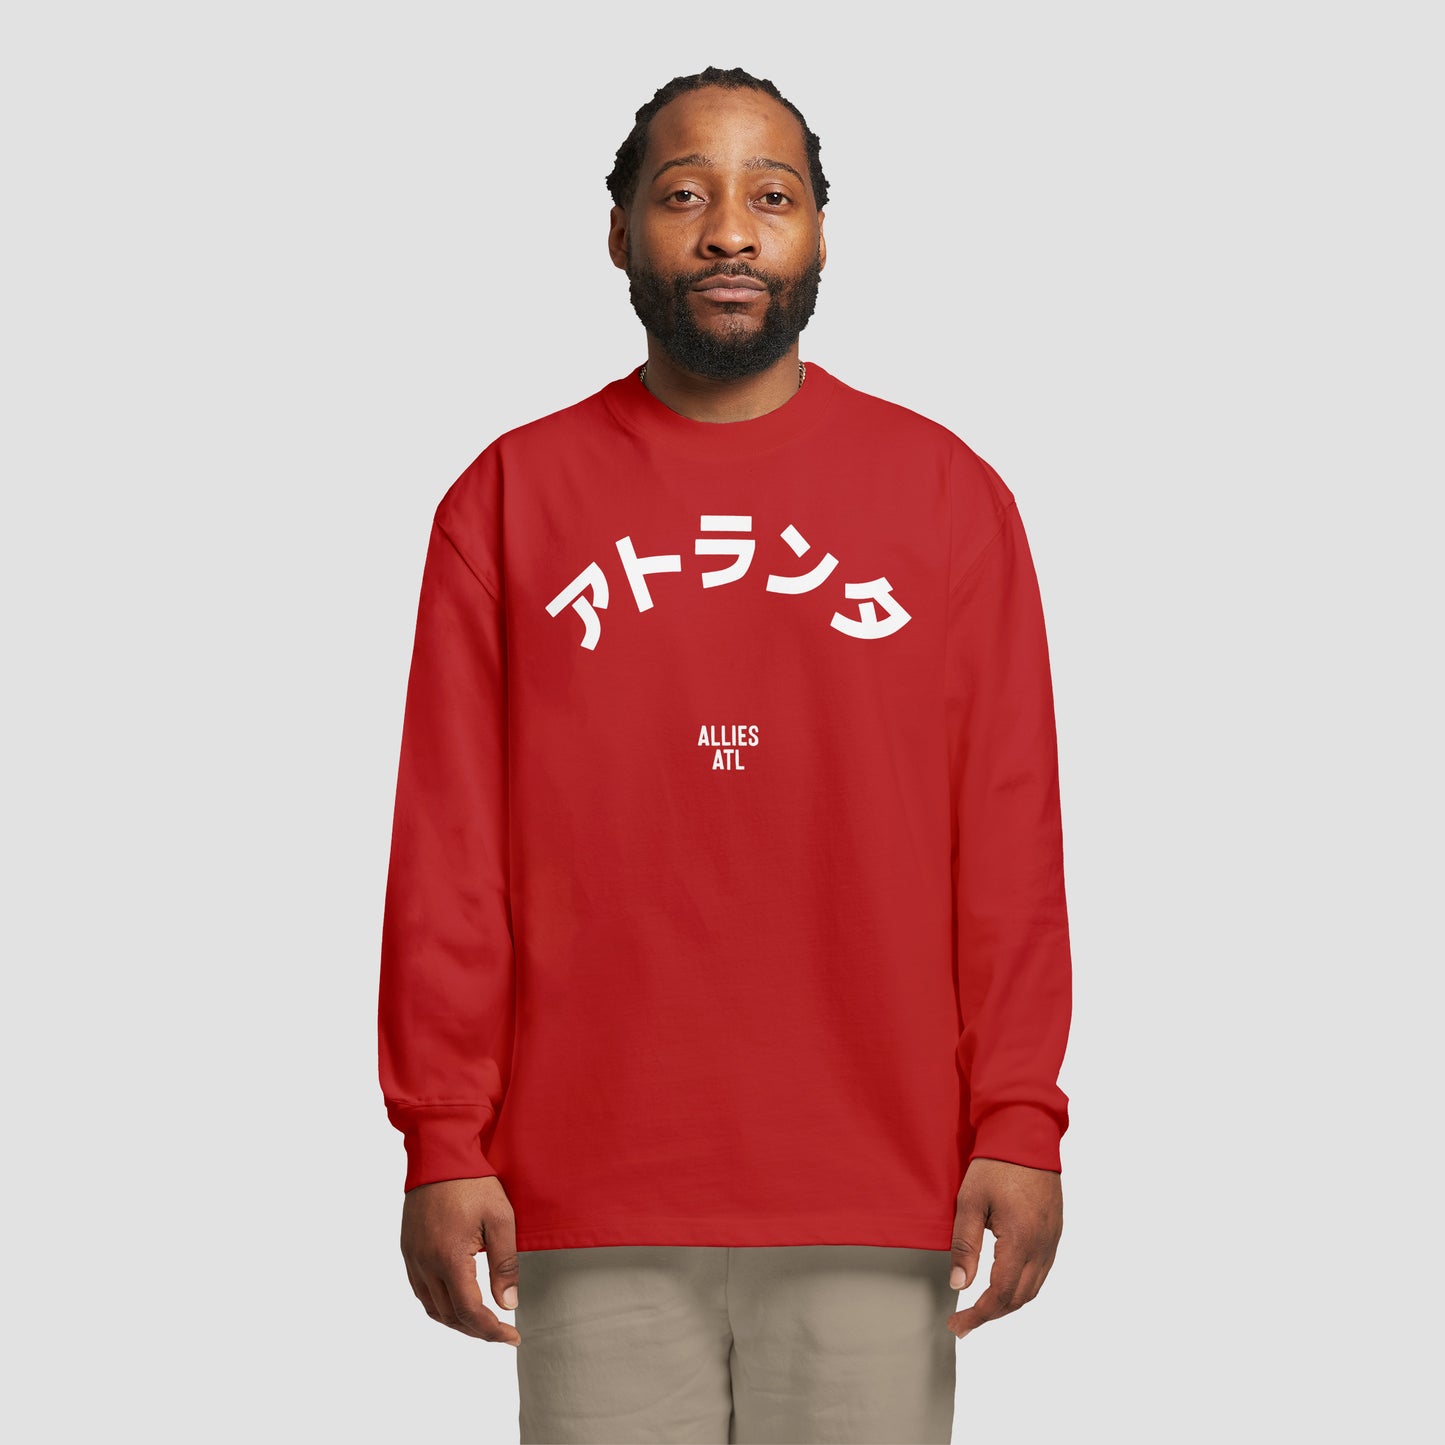 Atlanta Japanese T-shirt